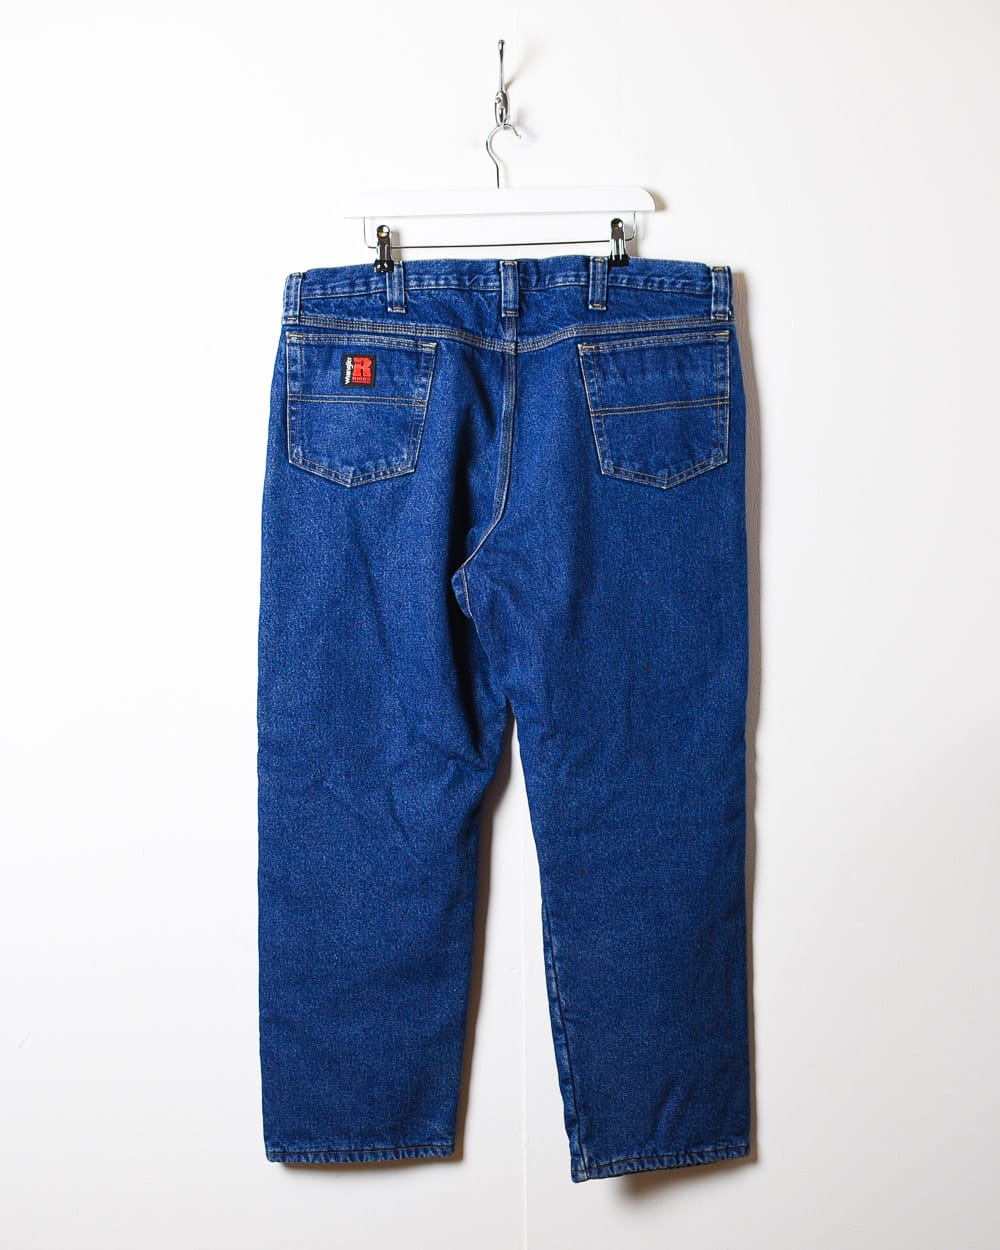 Blue Wrangler Riggs Workwear Fleece Lined Jeans - W42 L30